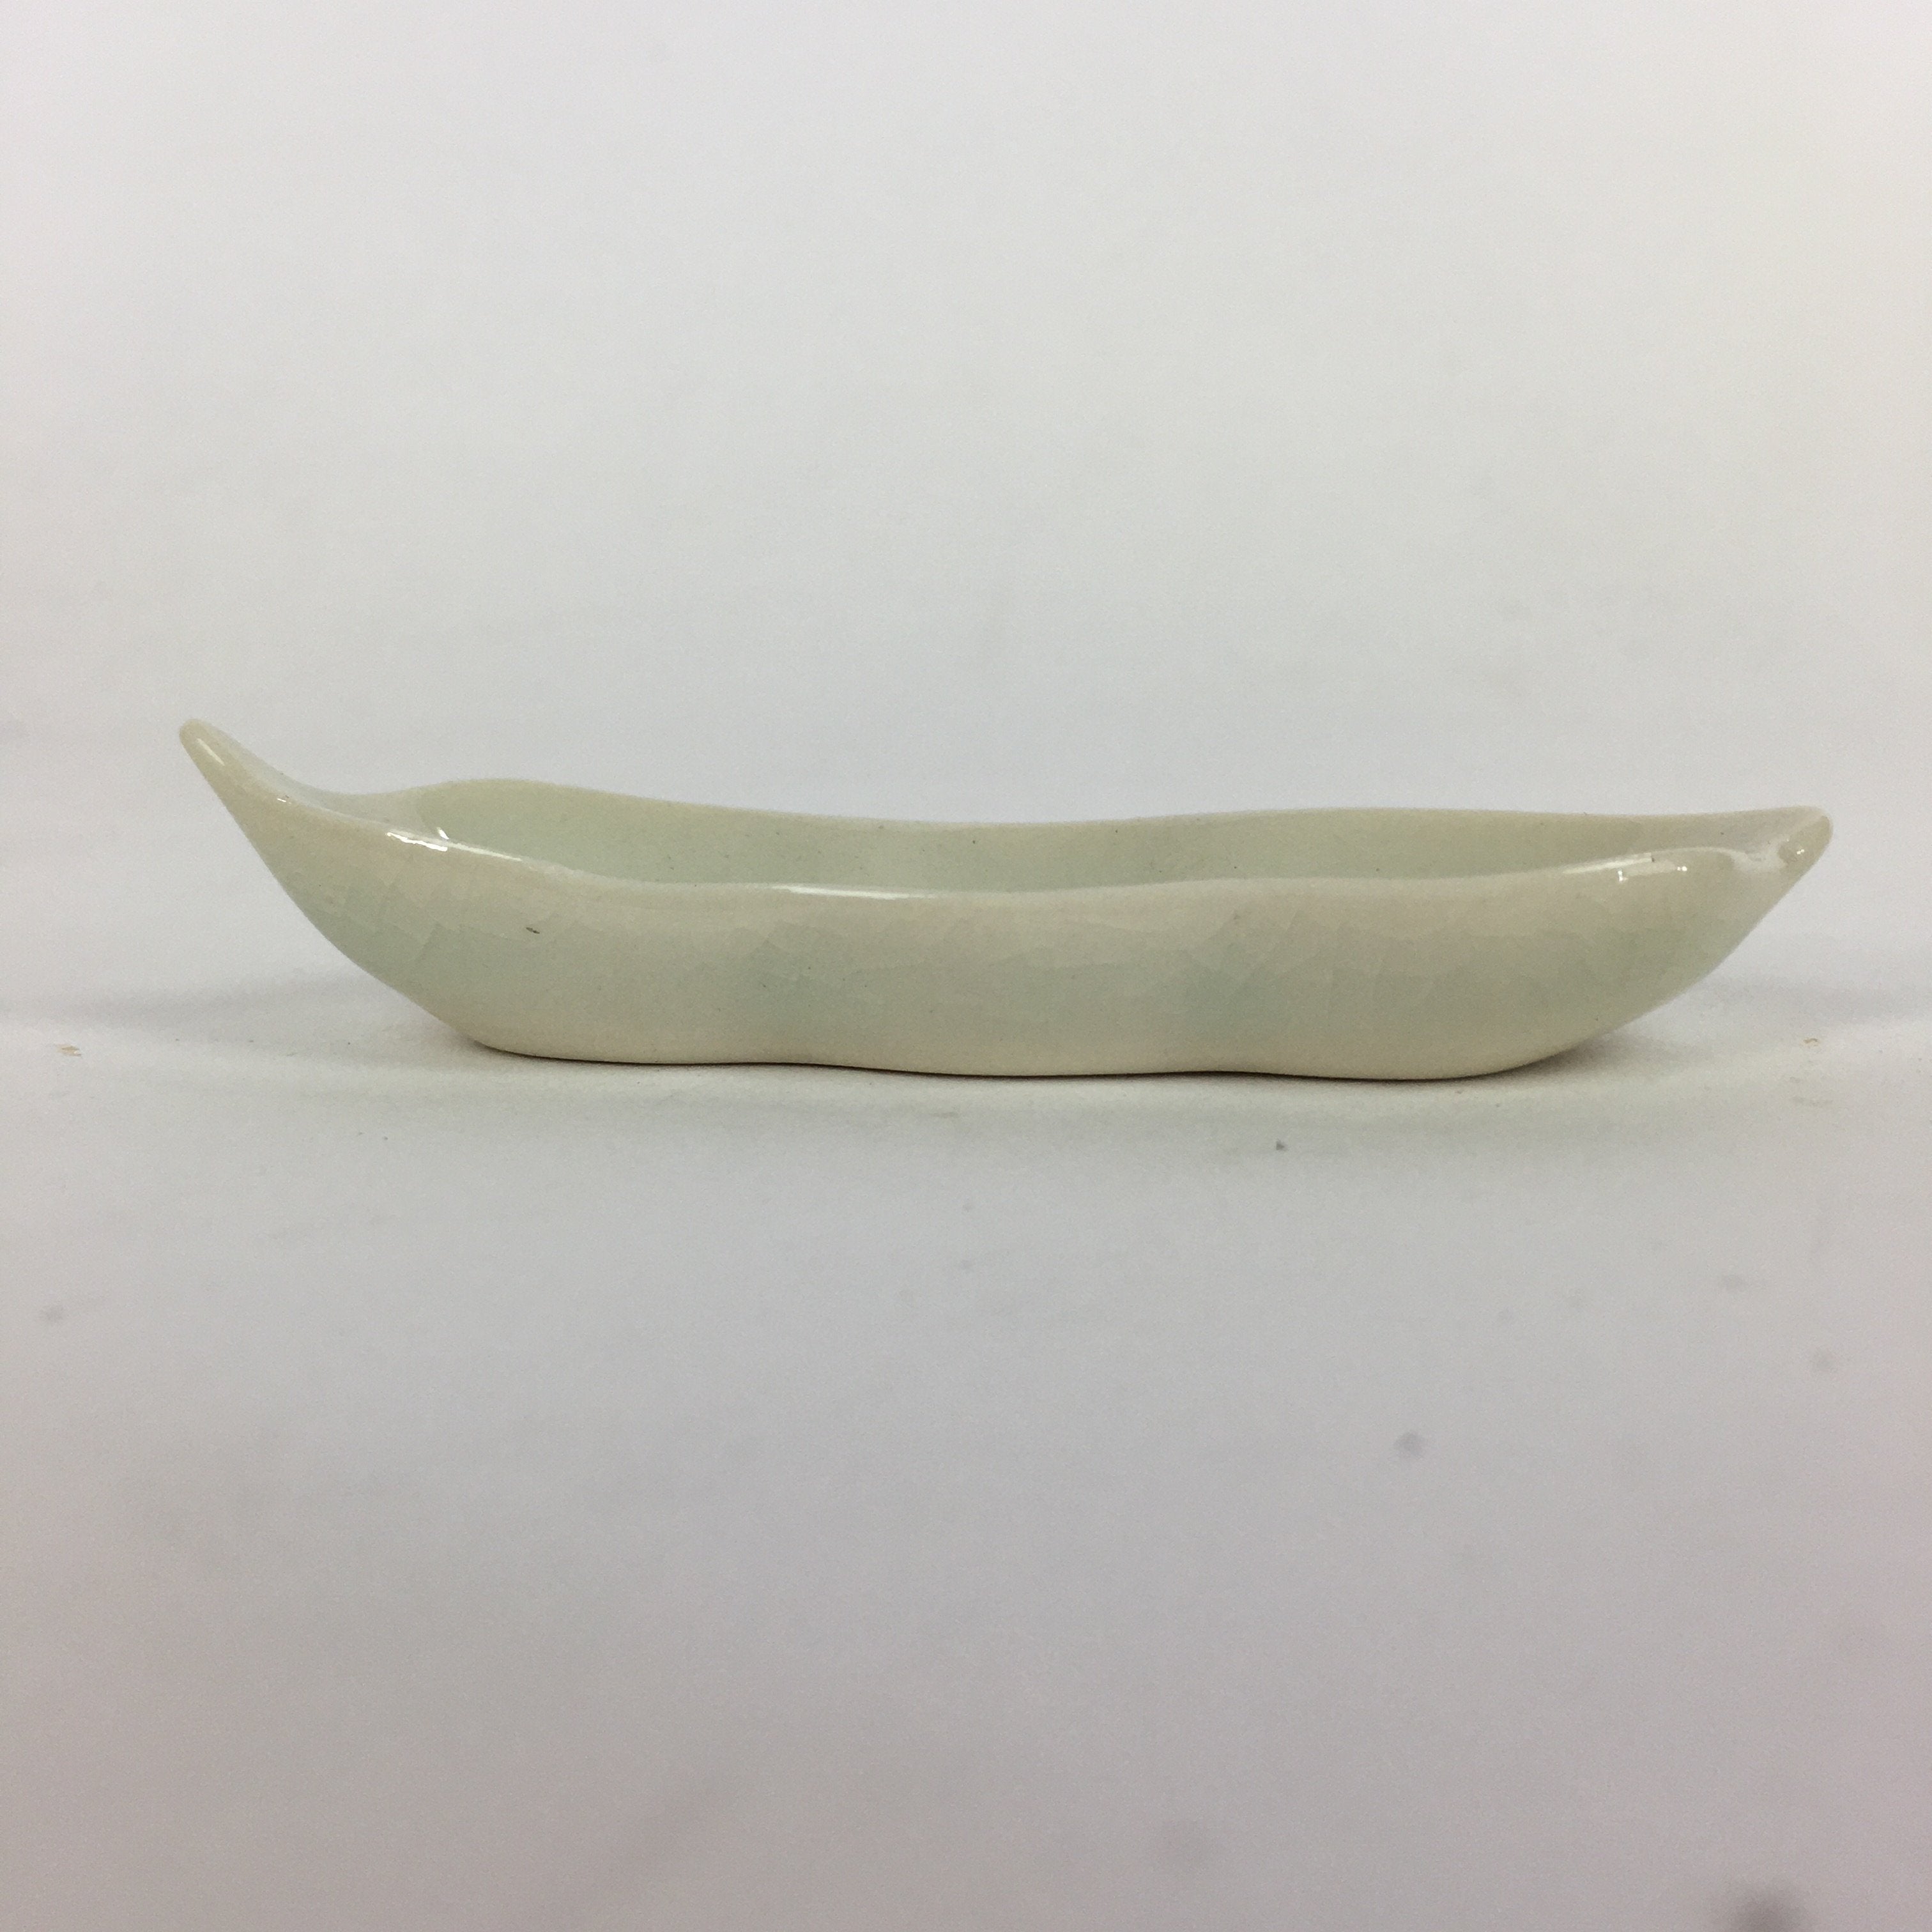 Japanese Ceramic Chopstick Rest Holder Vtg Edamame Beans Shape White CR212